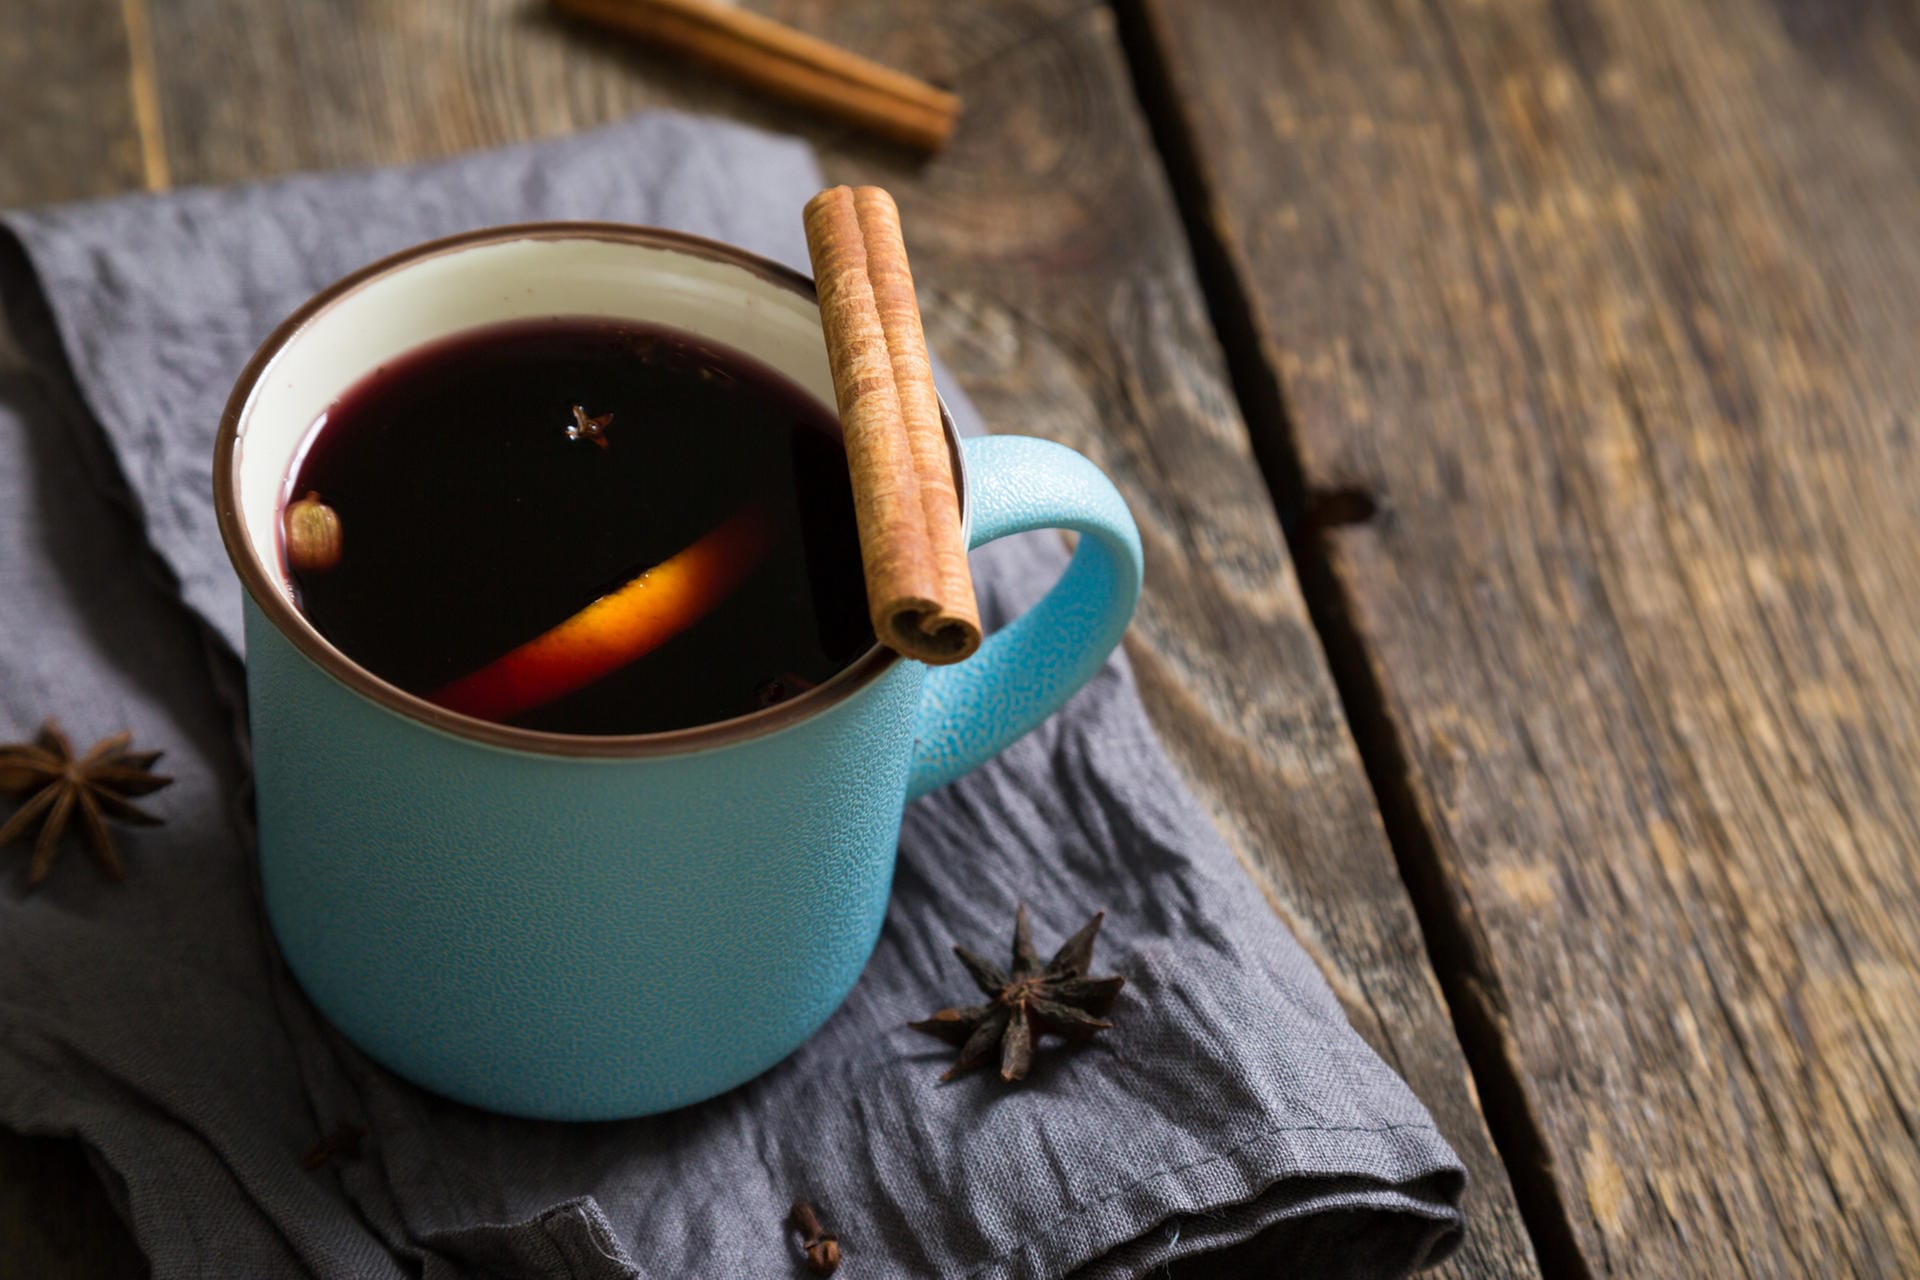 Im Kaffee Brulot wärmt nicht nur der heiße Kaffee, sondern gewürzter Branntwein. Gewürze und Zesten von Orange und Zitrone sorgen für winterliche stimmung.